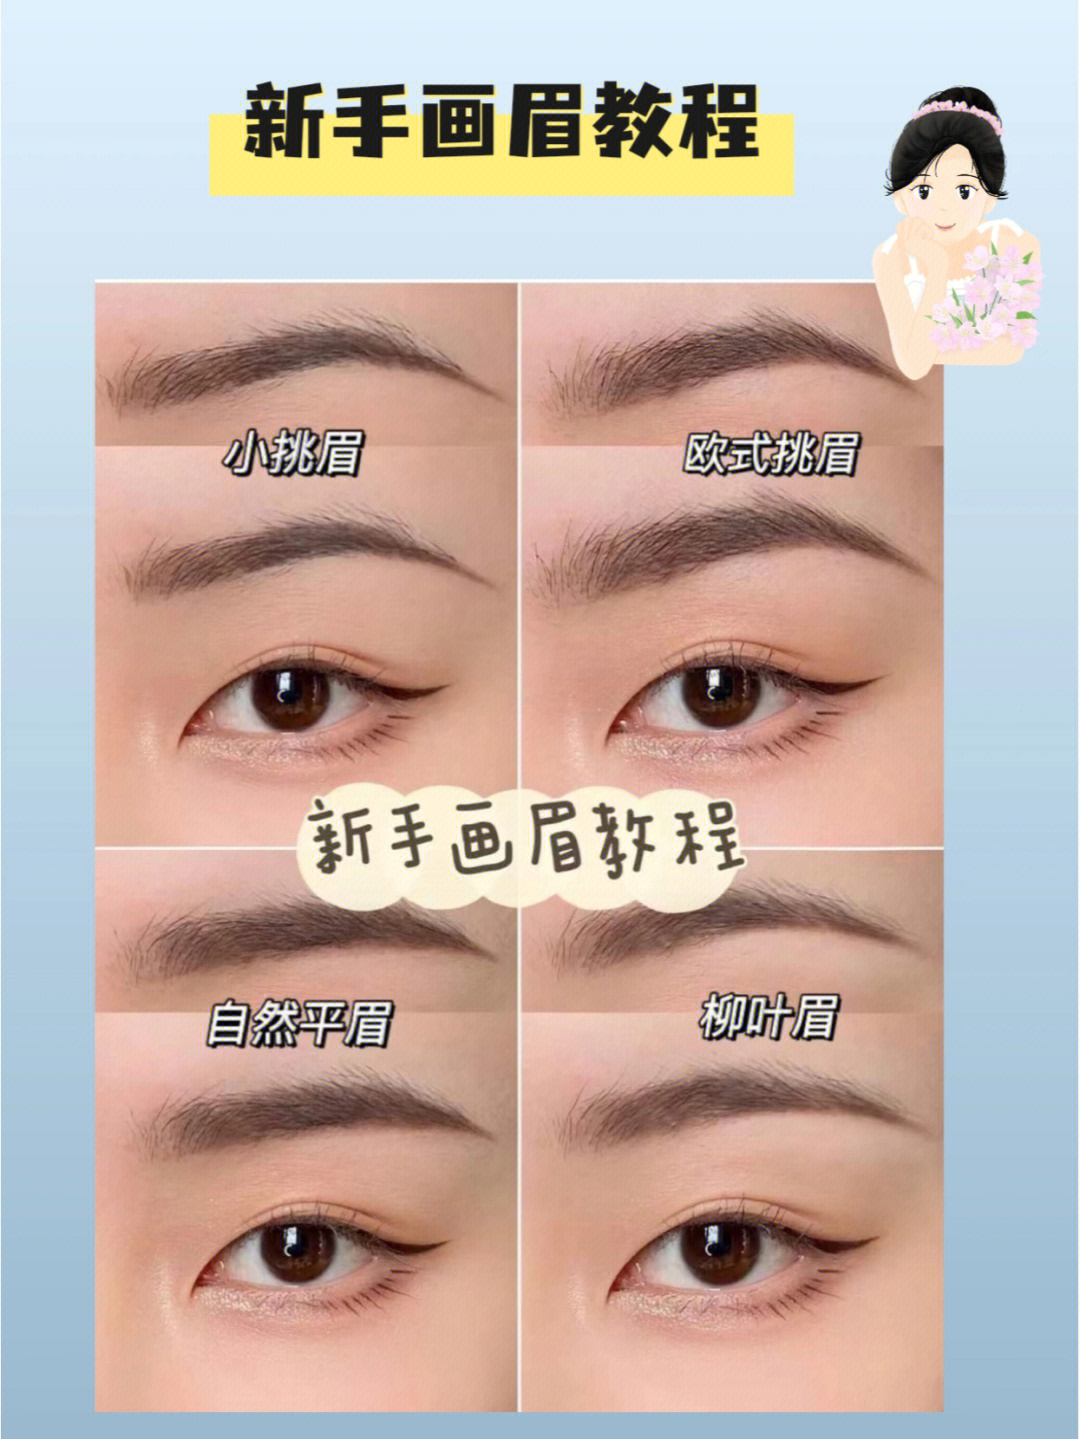 画眉教程4种适合新手的眉毛画法